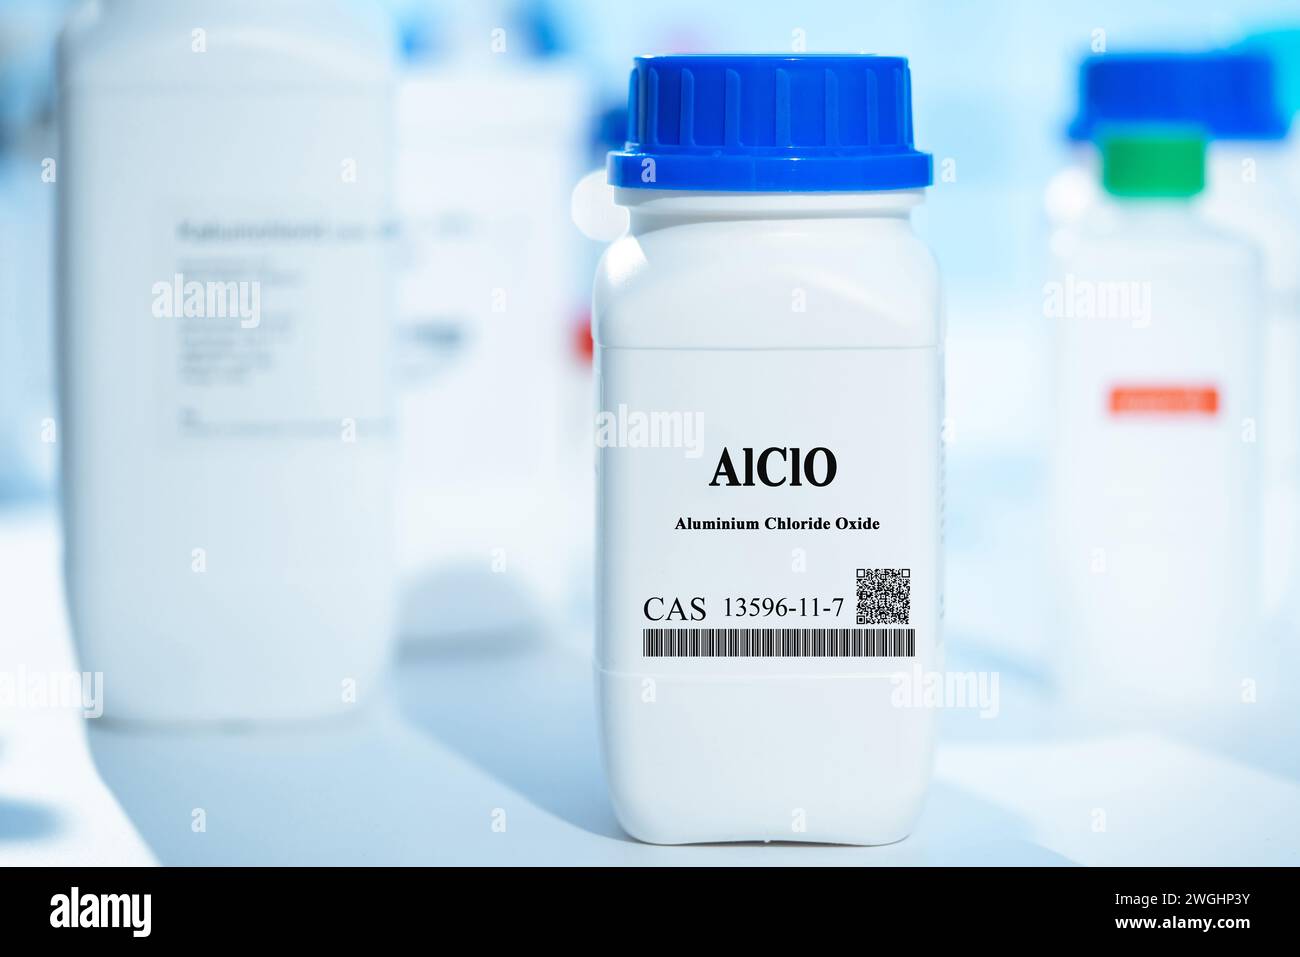 Cloruro de aluminio AlClO óxido CAS 13596-11-7 sustancia química en envases de laboratorio de plástico blanco Foto de stock